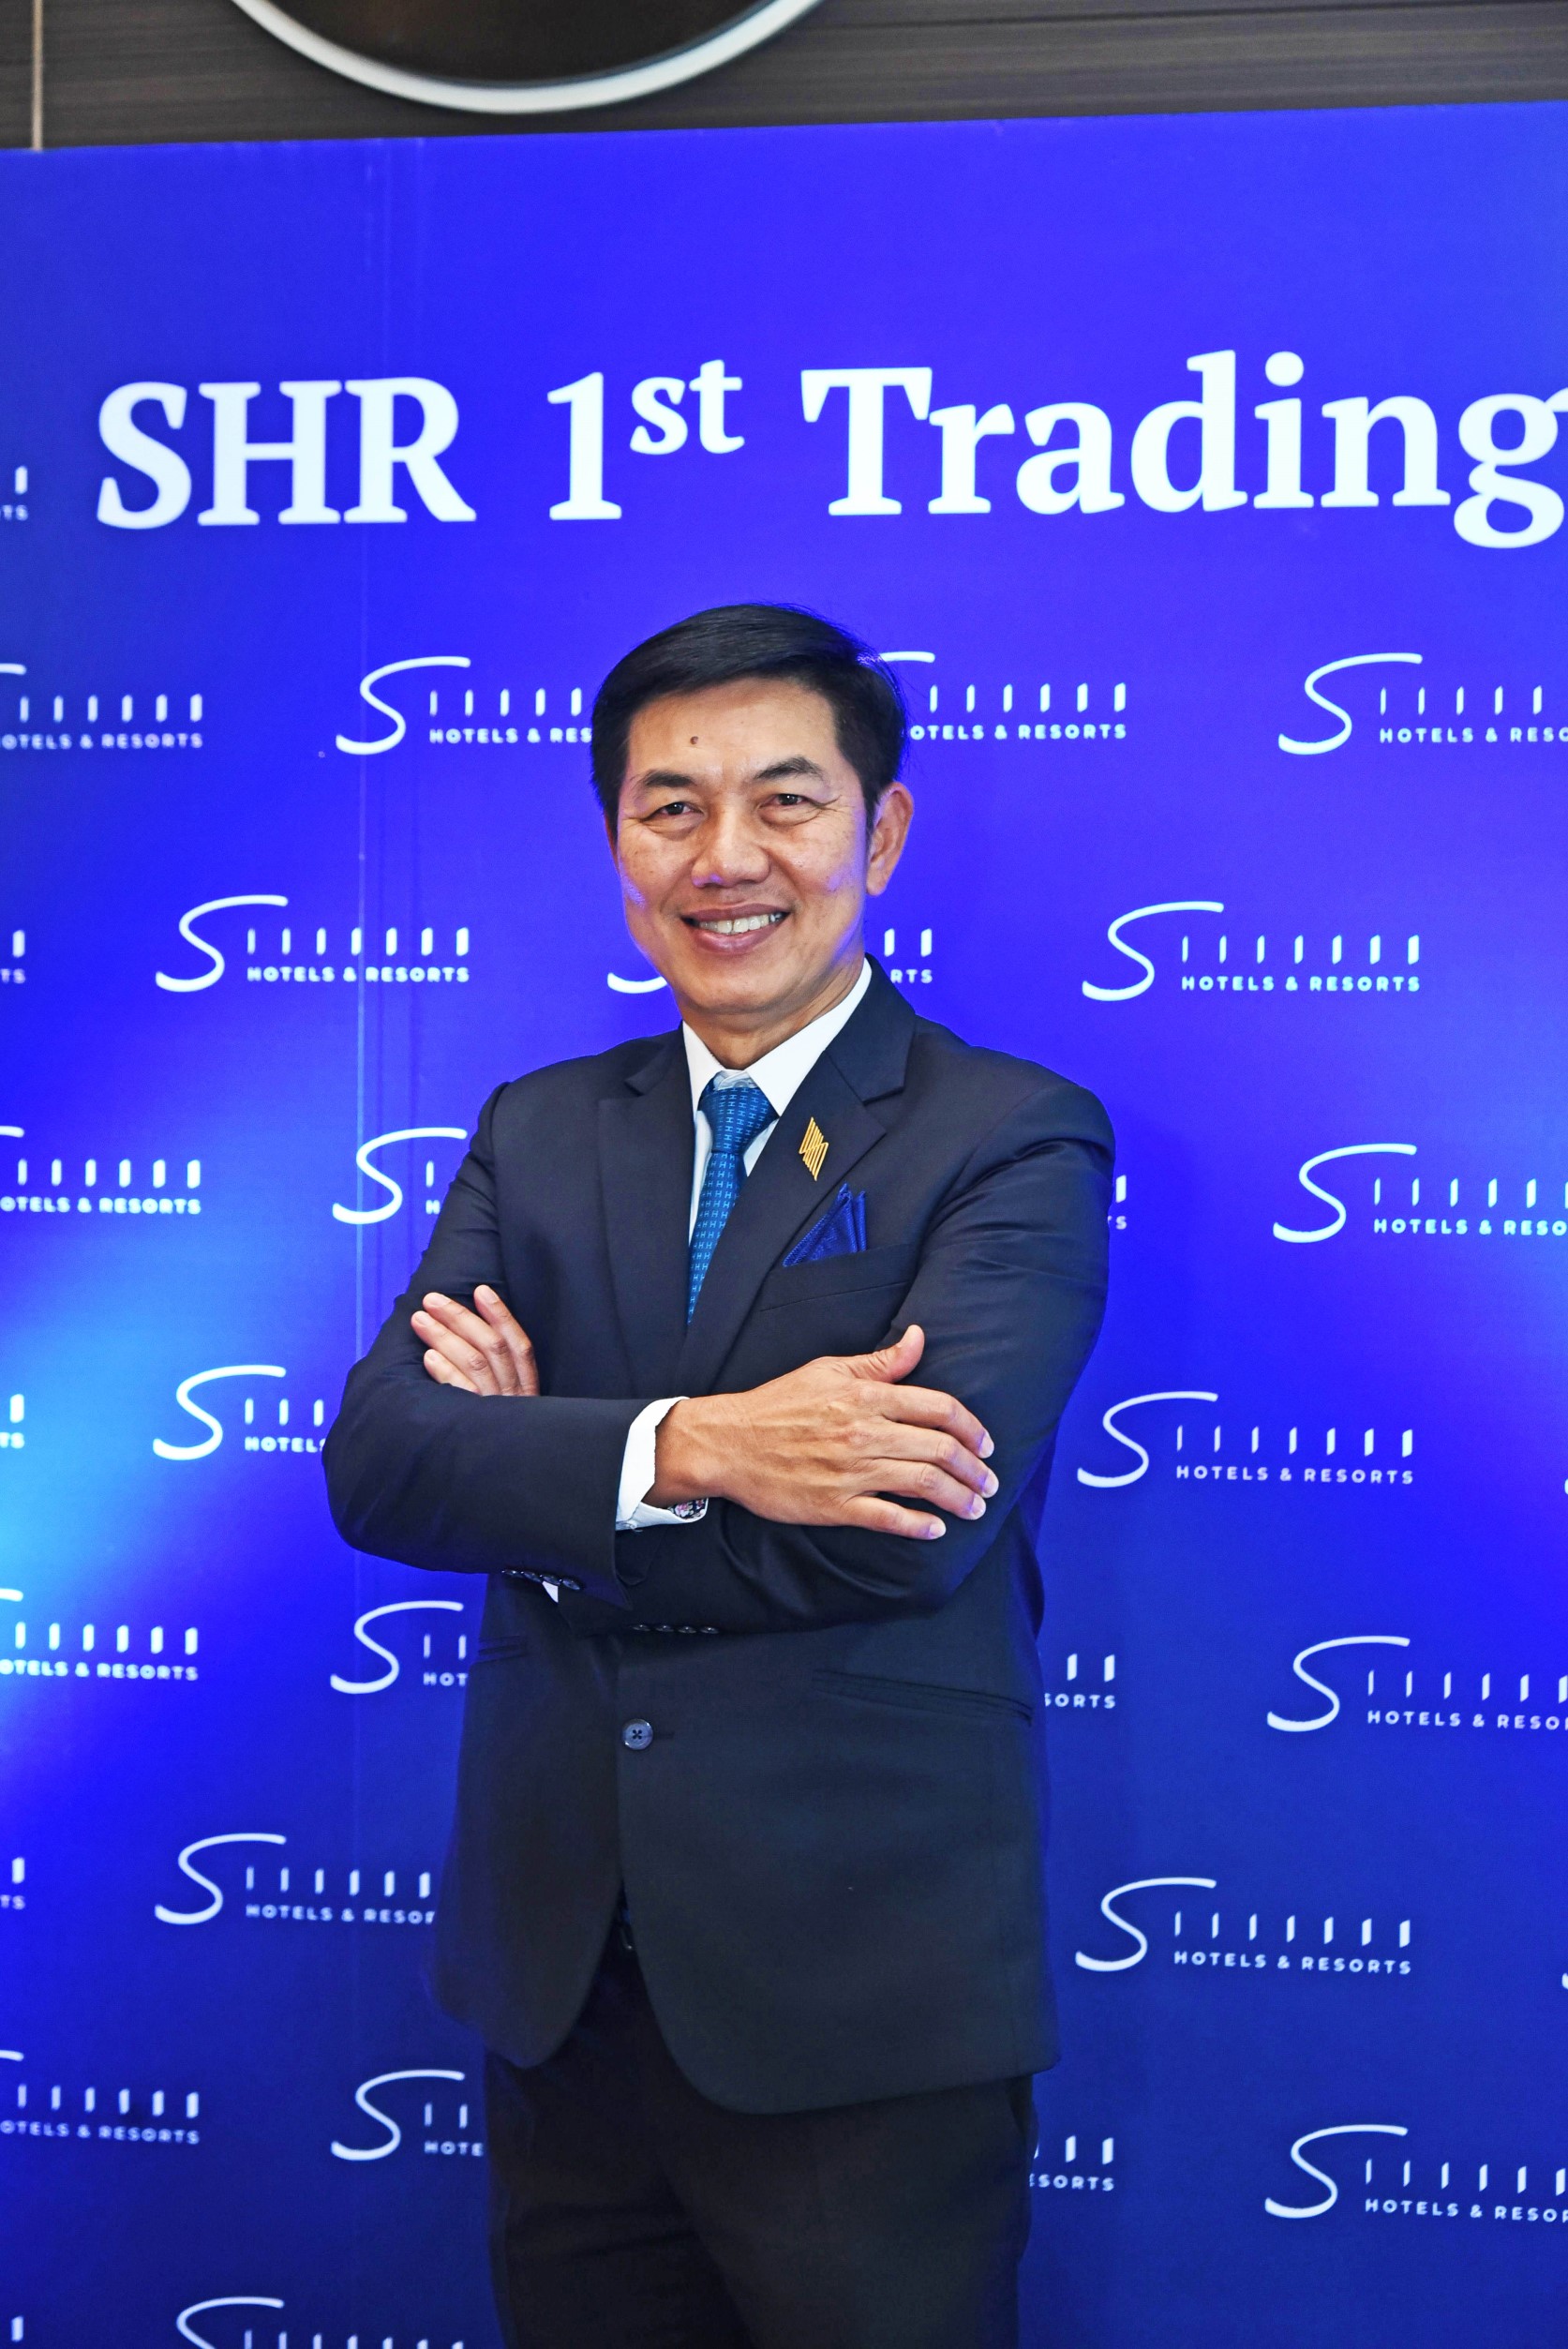 ผู้จัดการการจัดจำหน่ายหุ้น SHR ยันหุ้น SHR Growth Stock